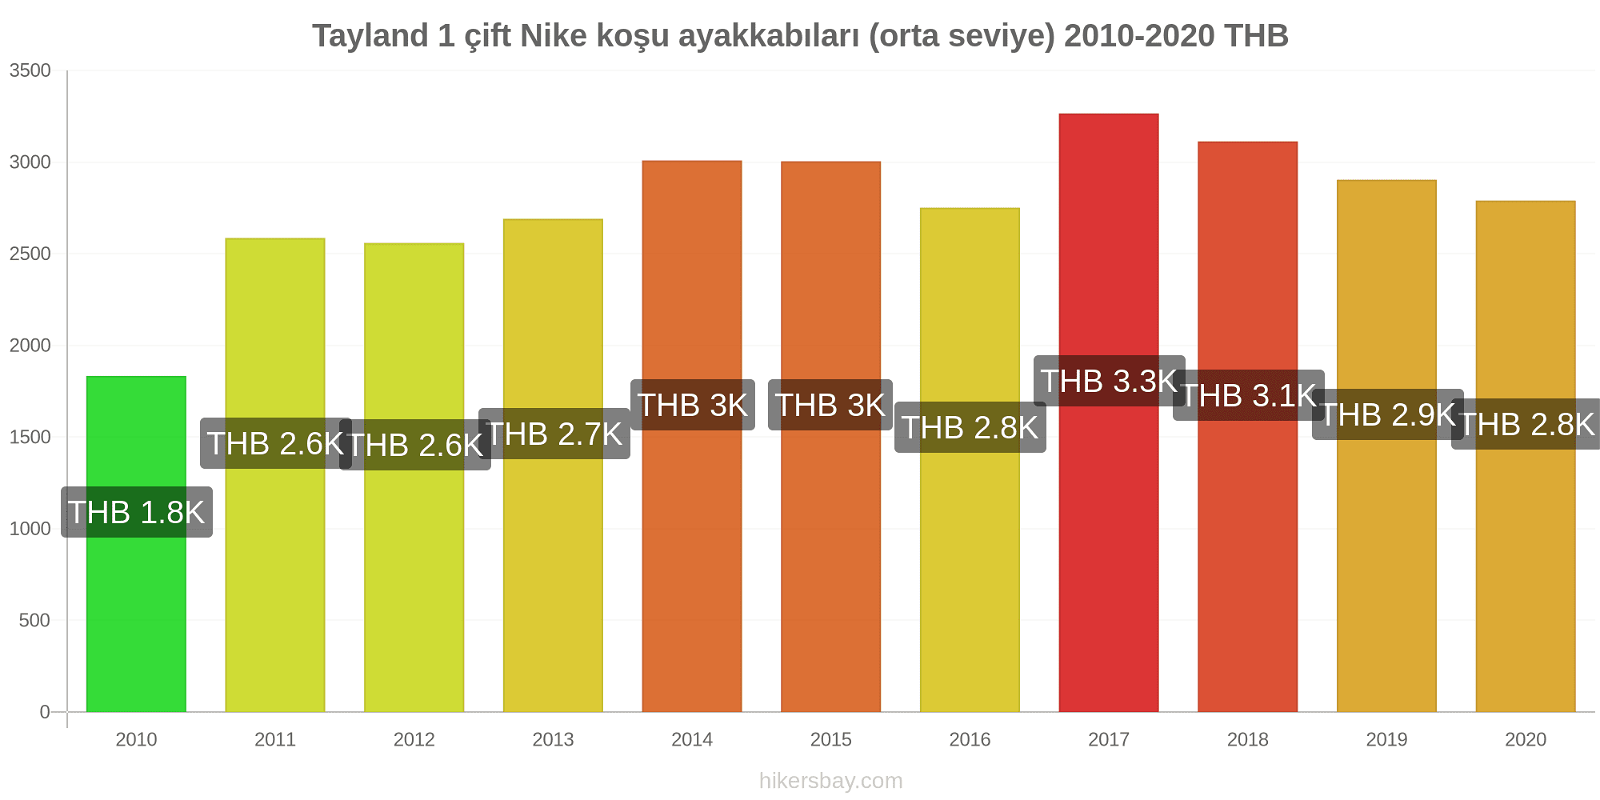 Tayland fiyat değişiklikleri 1 çift Nike koşu ayakkabıları (orta seviye) hikersbay.com